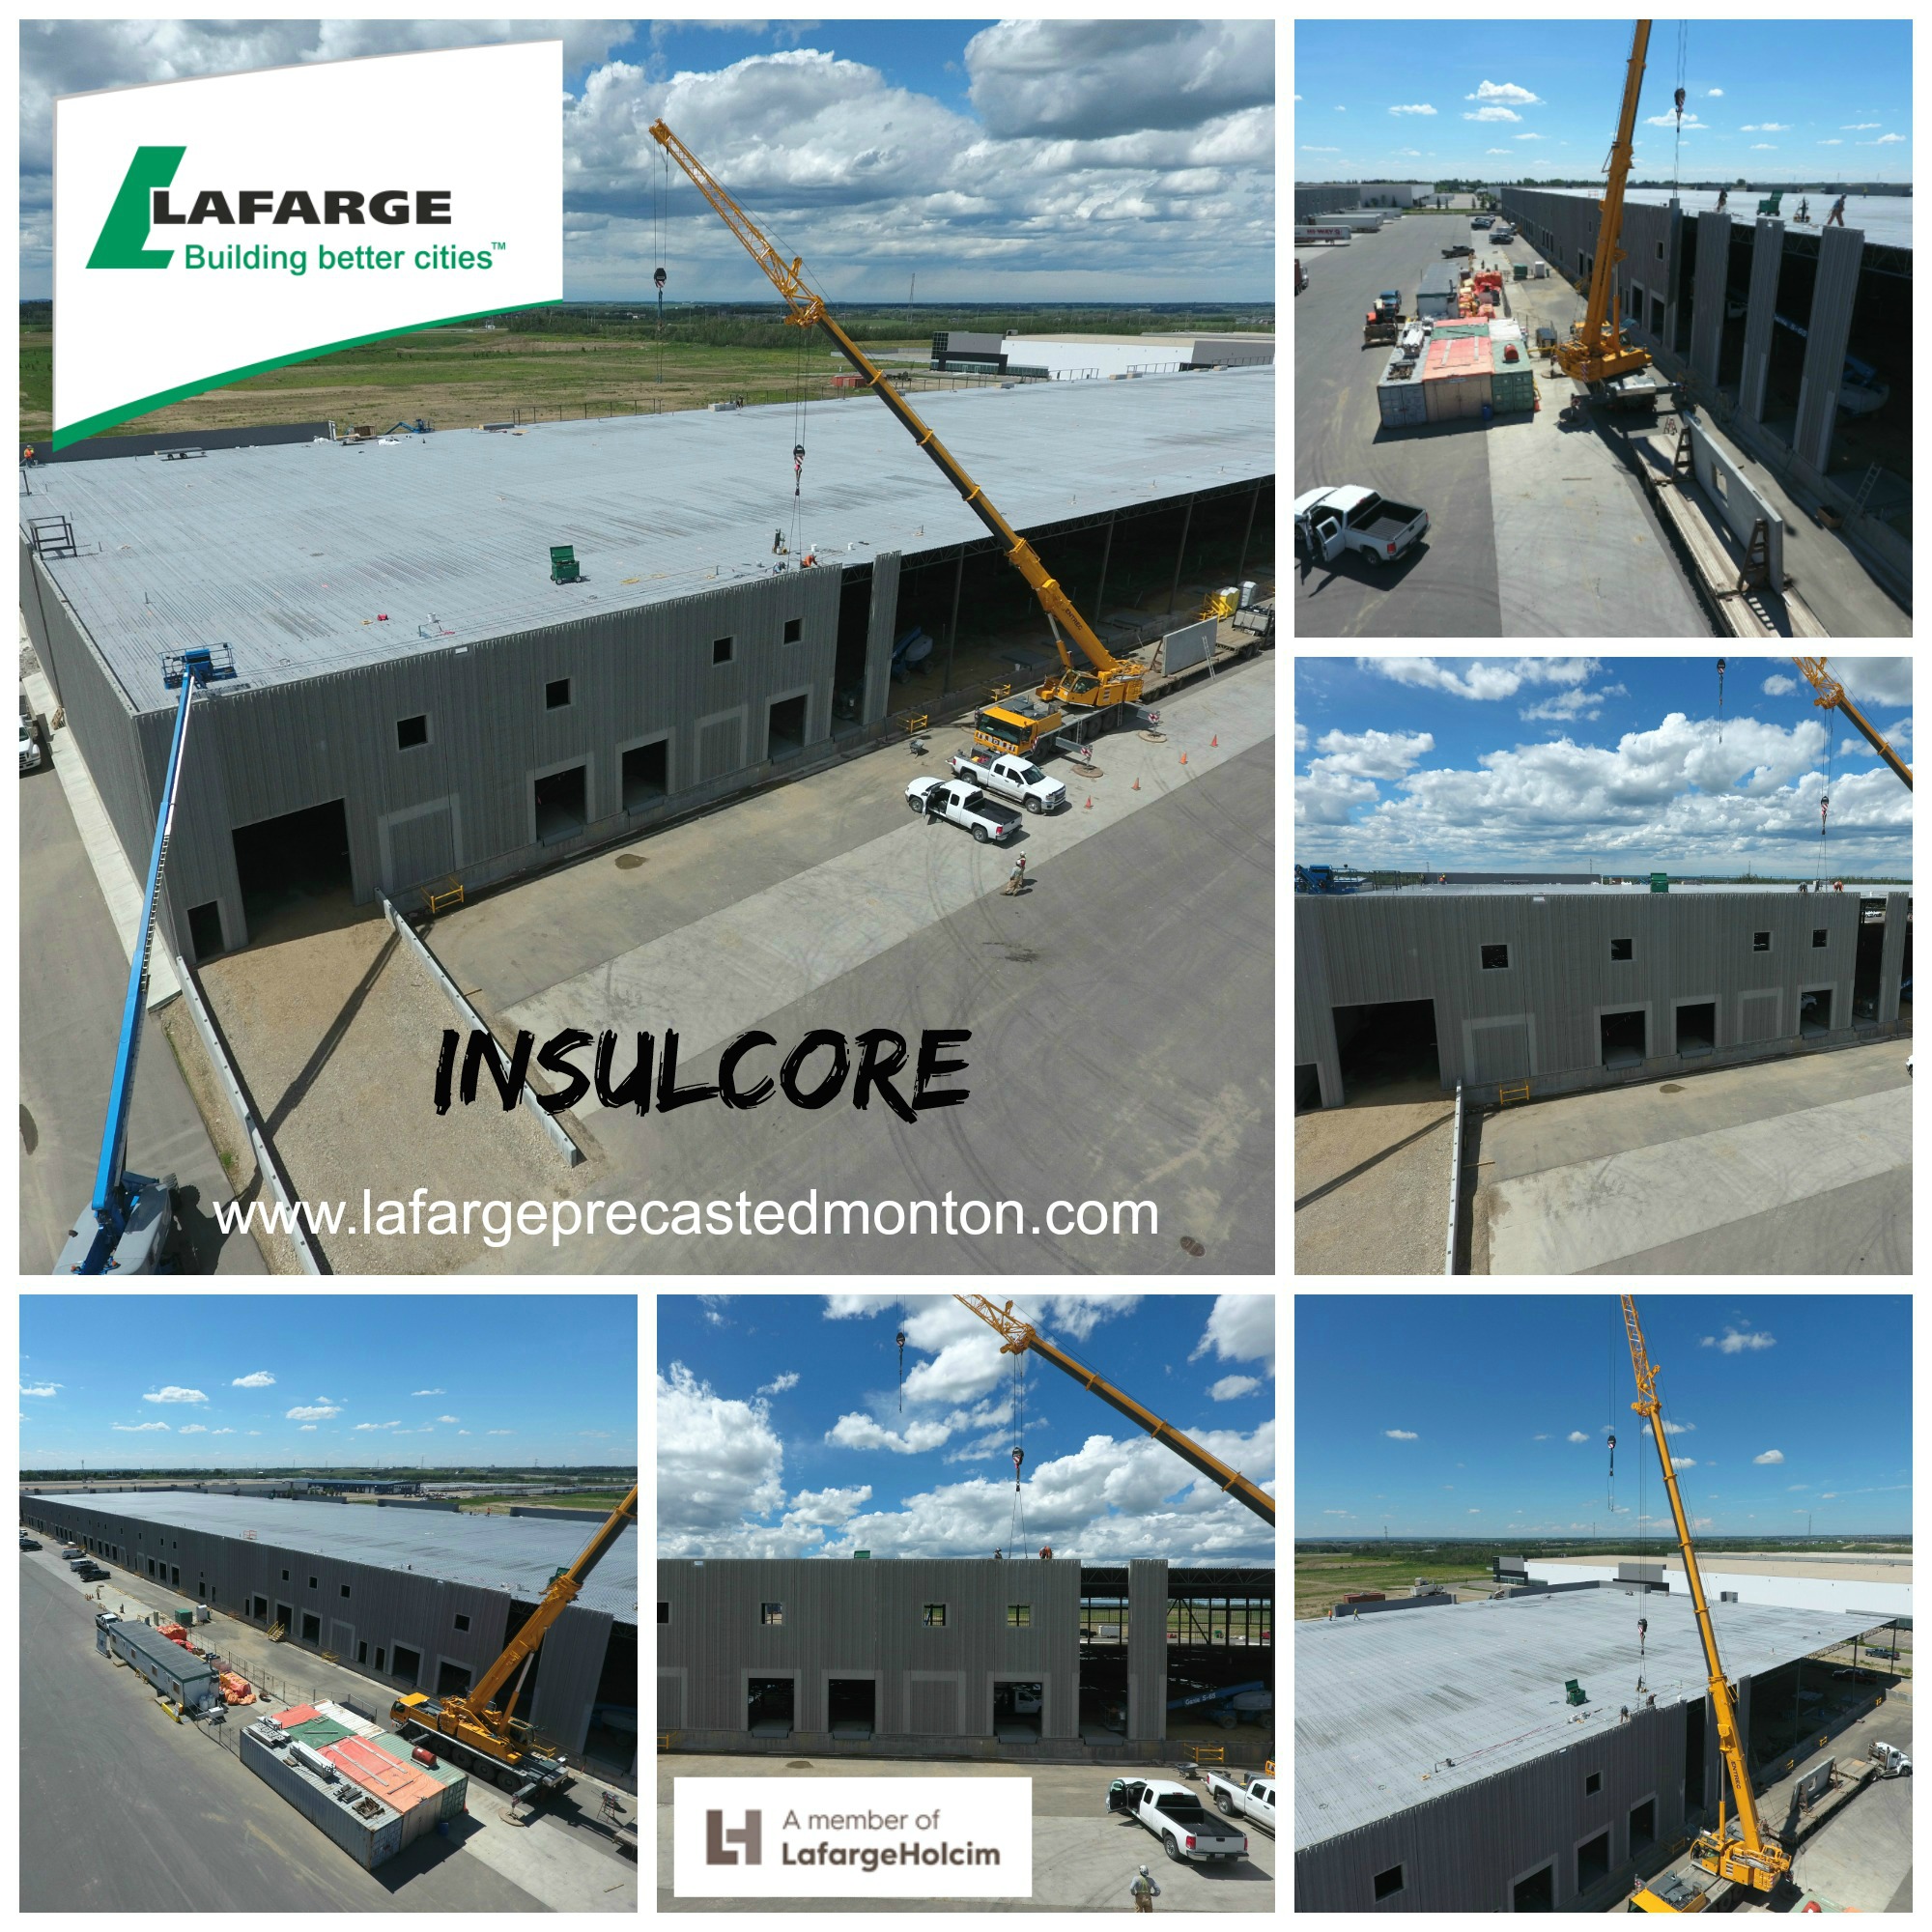 precast-concrete-exterior-wall-panels-by-lafarge-precast-edmonton